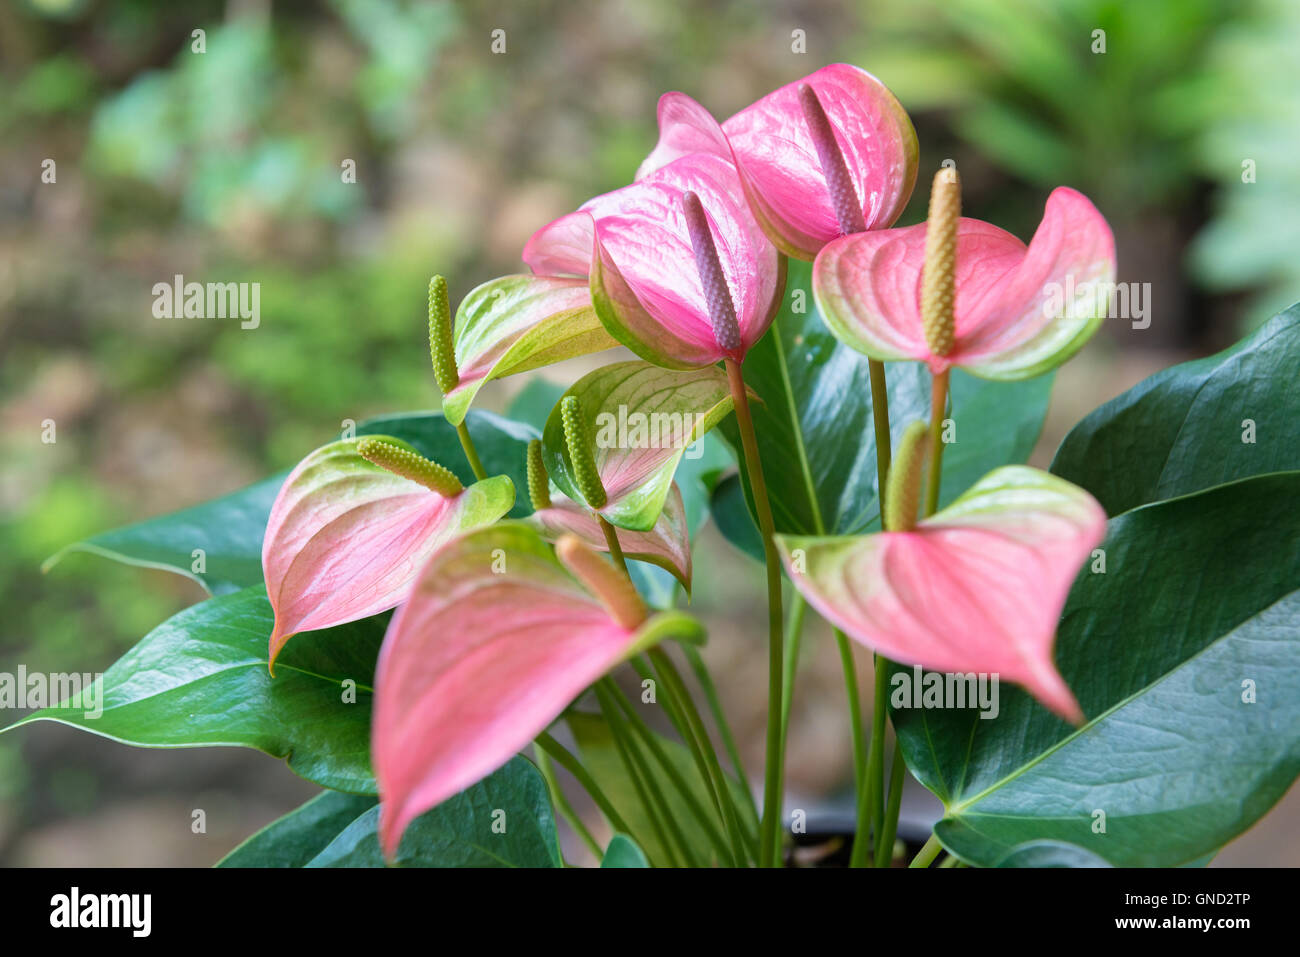 Beautiful pink spadix flower Stock Photo